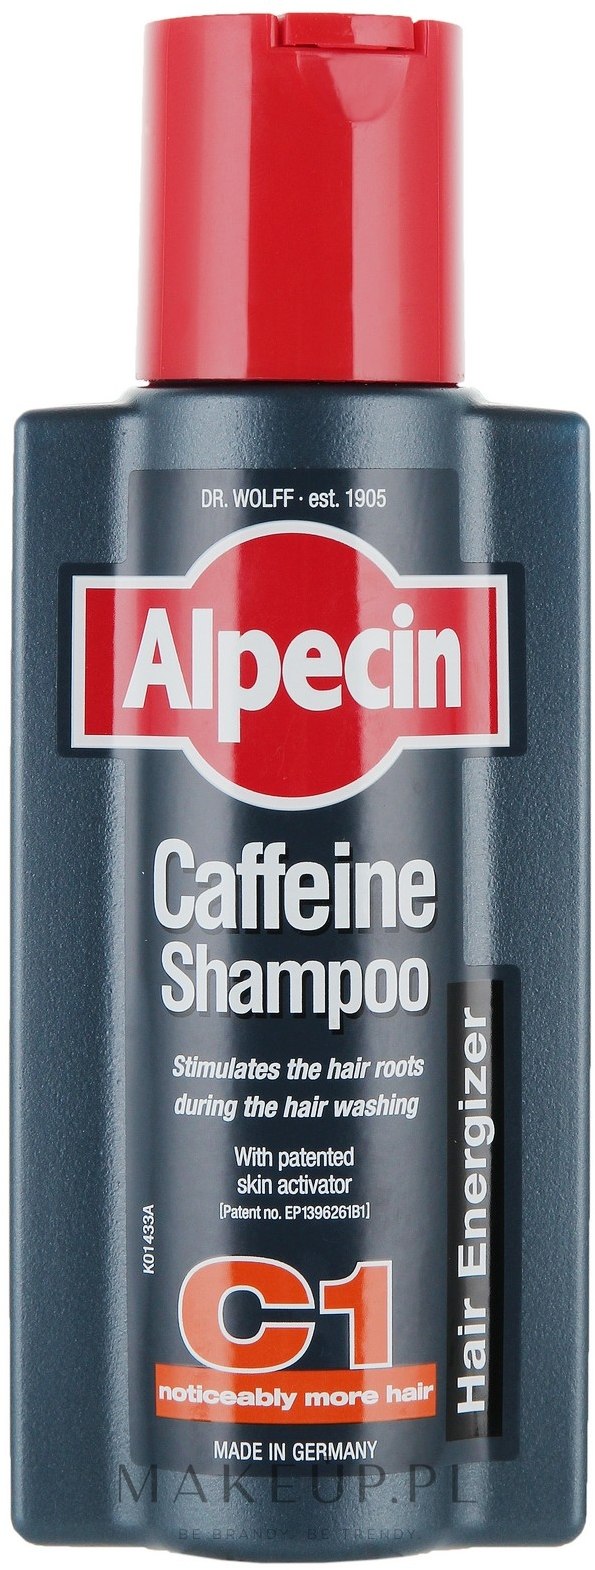 szampon z kofeina alpecin opinie